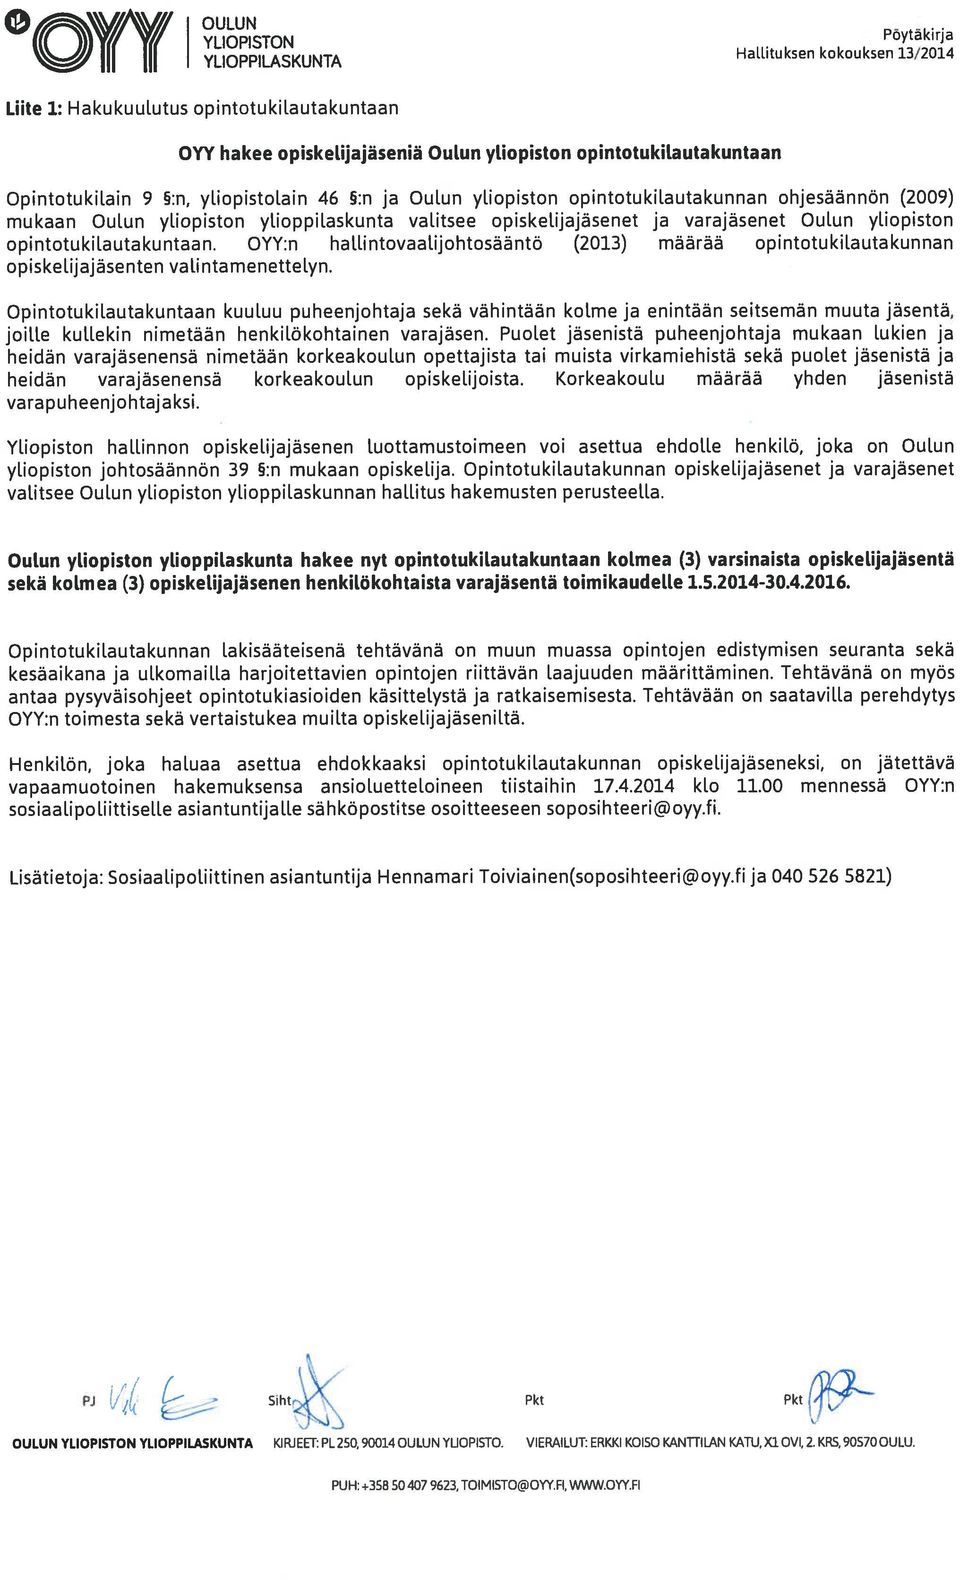 ohjesäännön (2009) mukaan Oulun yliopiston ylioppilaskunta valitsee opiskelijajäsenet ja varajäsenet Oulun yliopiston opintotukilautakuntaan.